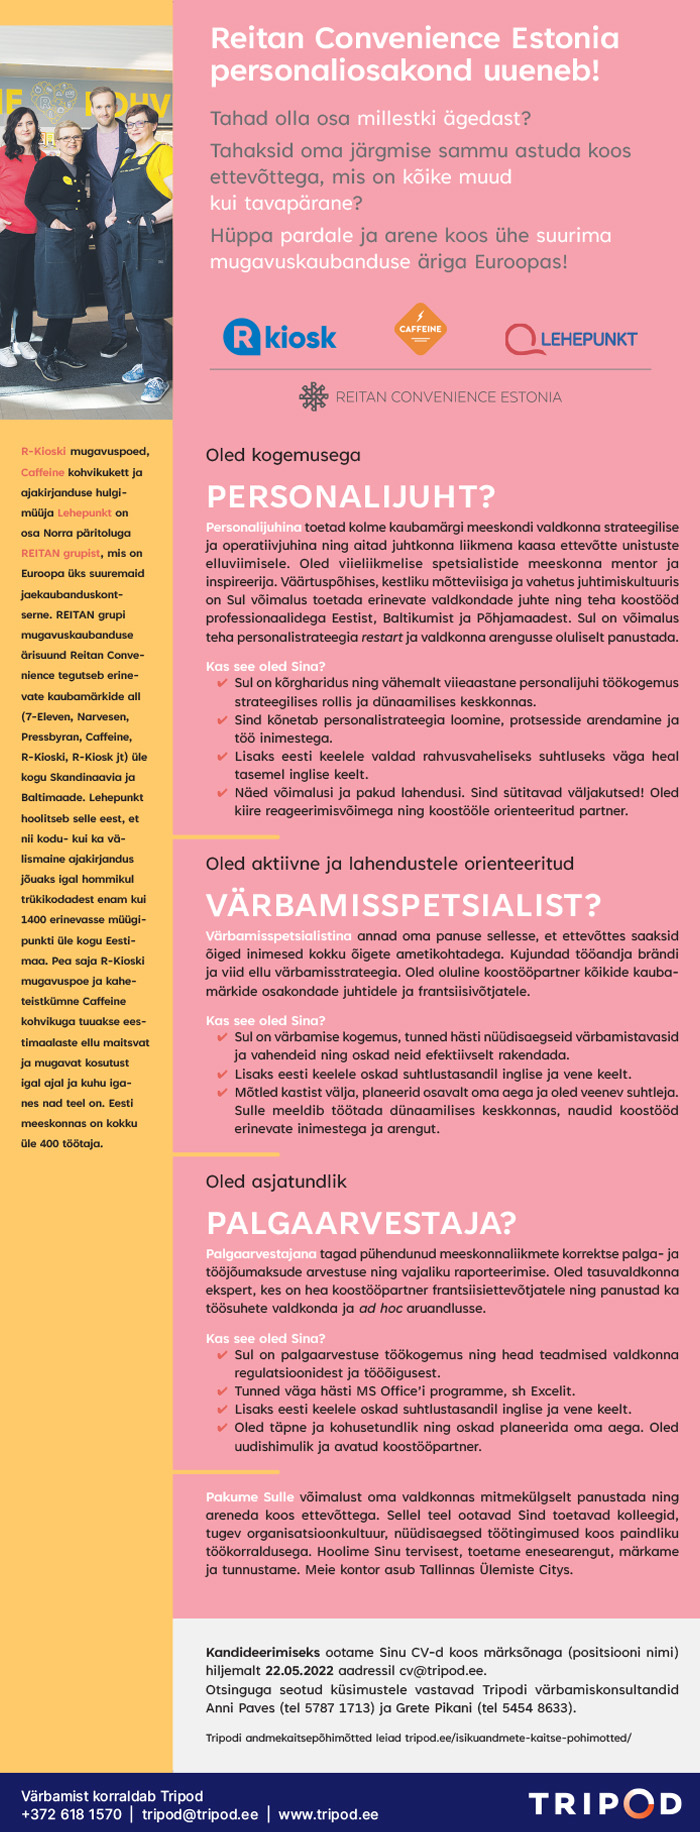 PERSONALIJUHT / VÄRBAMISSPETSIALIST / PALGAARVESTAJA